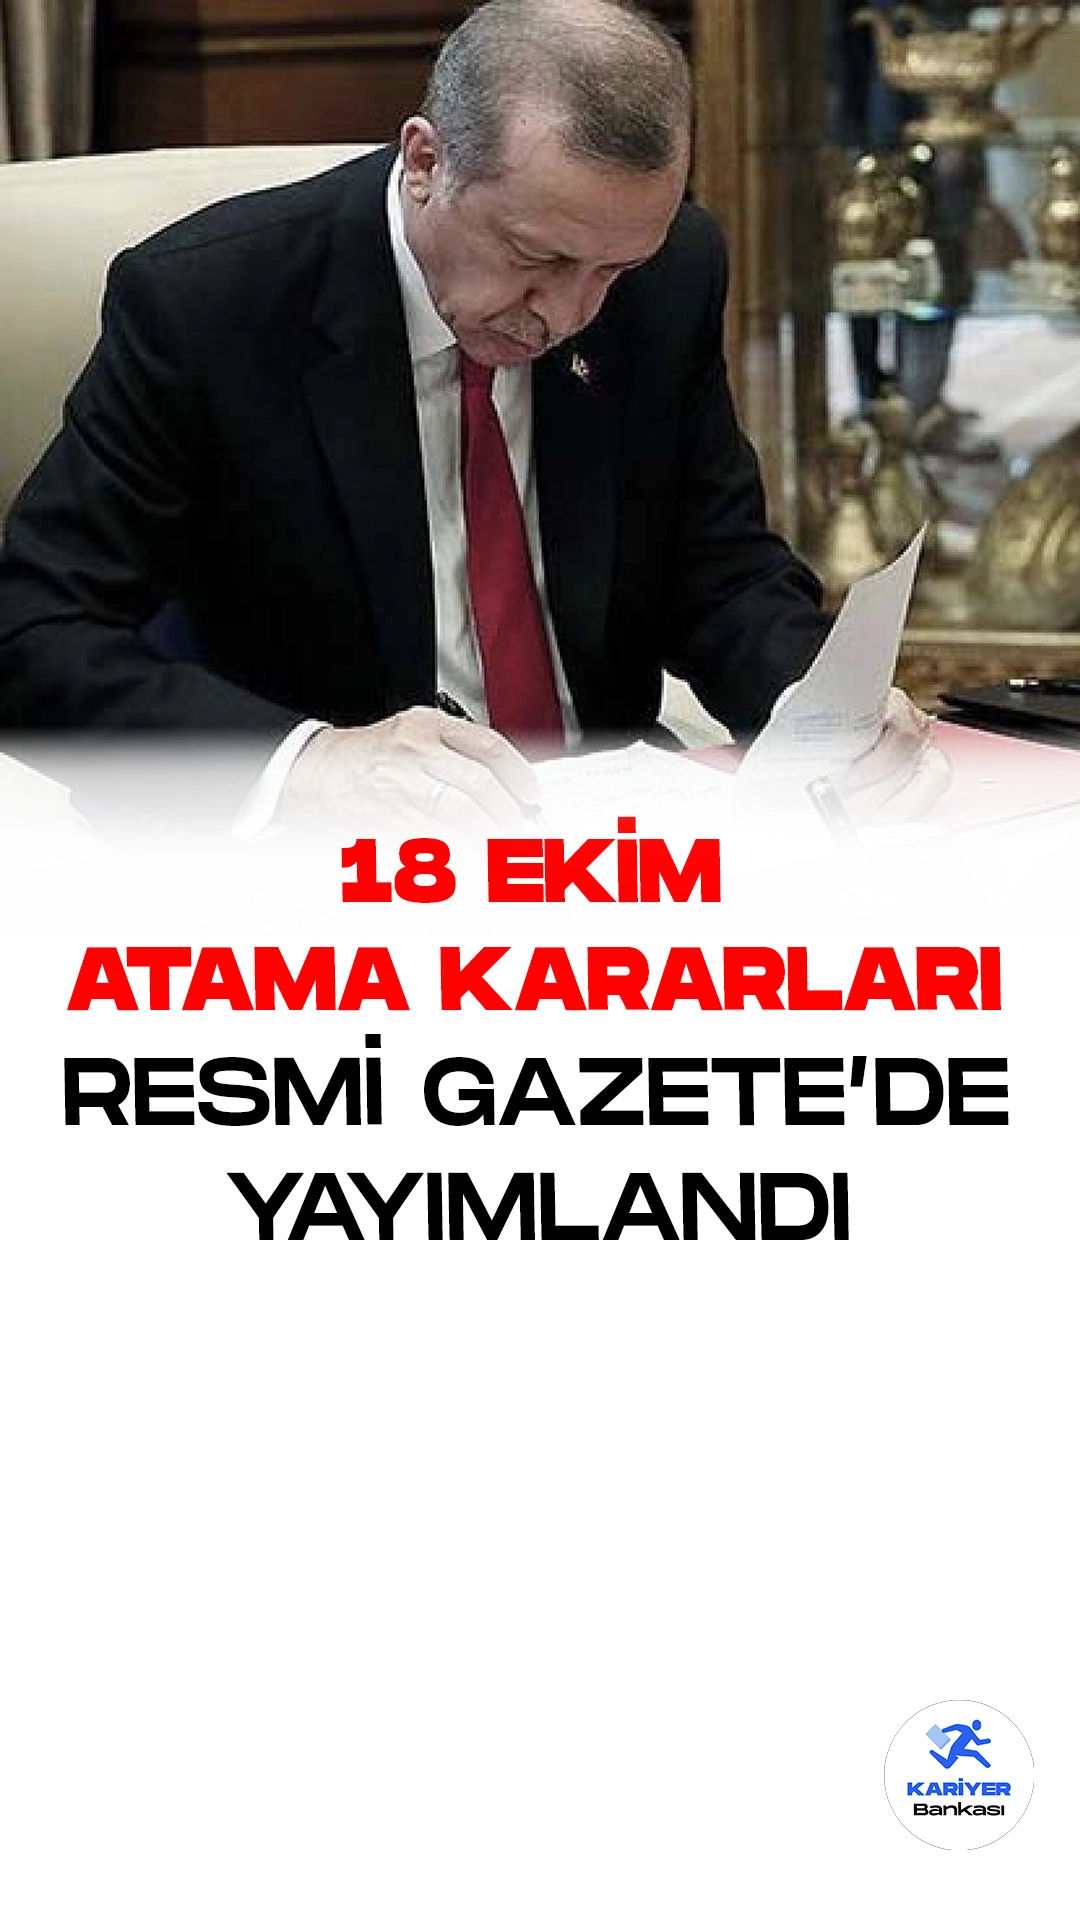 18 Ekim Atama Kararları Resmi Gazete'de Yayımlandı.Cumhurbaşkanı Recep Tayyip Erdoğan İmzalı Atama Kararları Resmi Gazete'de Yayımlandı.